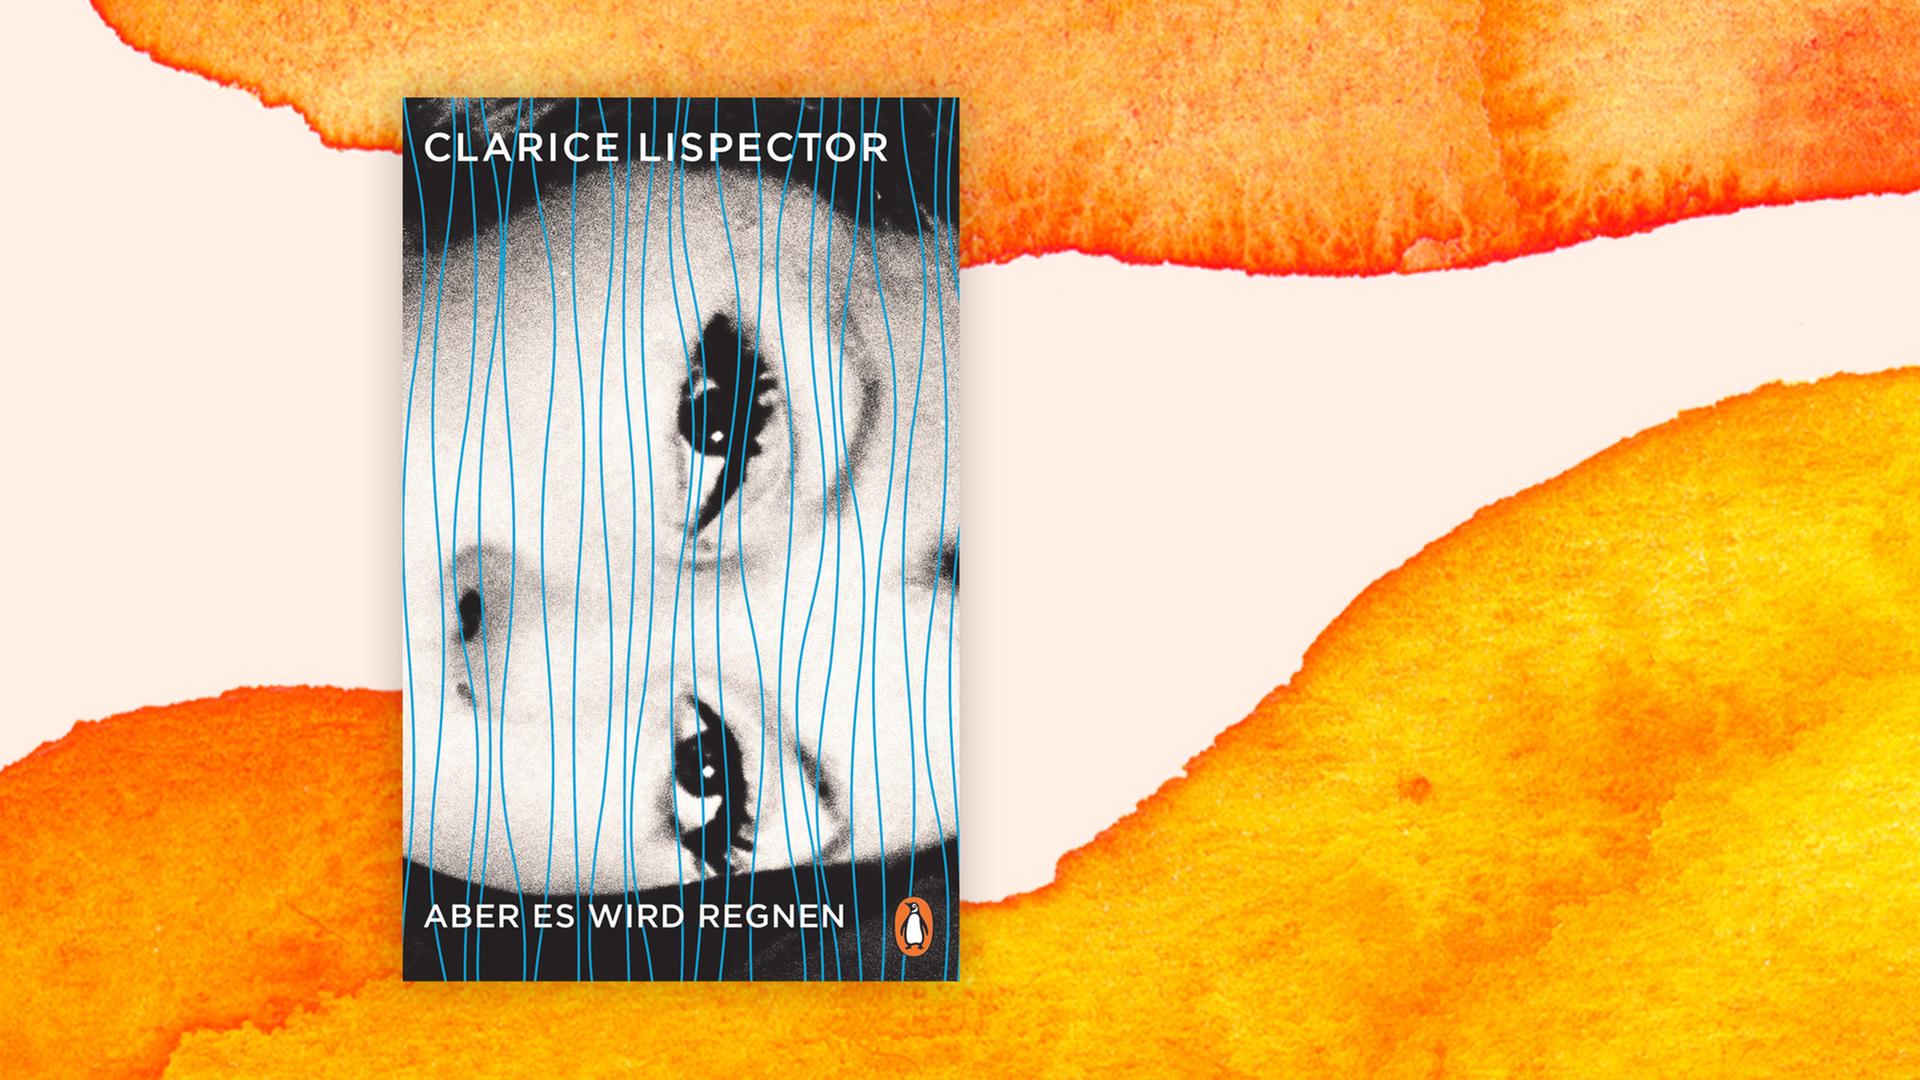 Buchcover zu Clarice Lispector: "Aber es wird regnen"